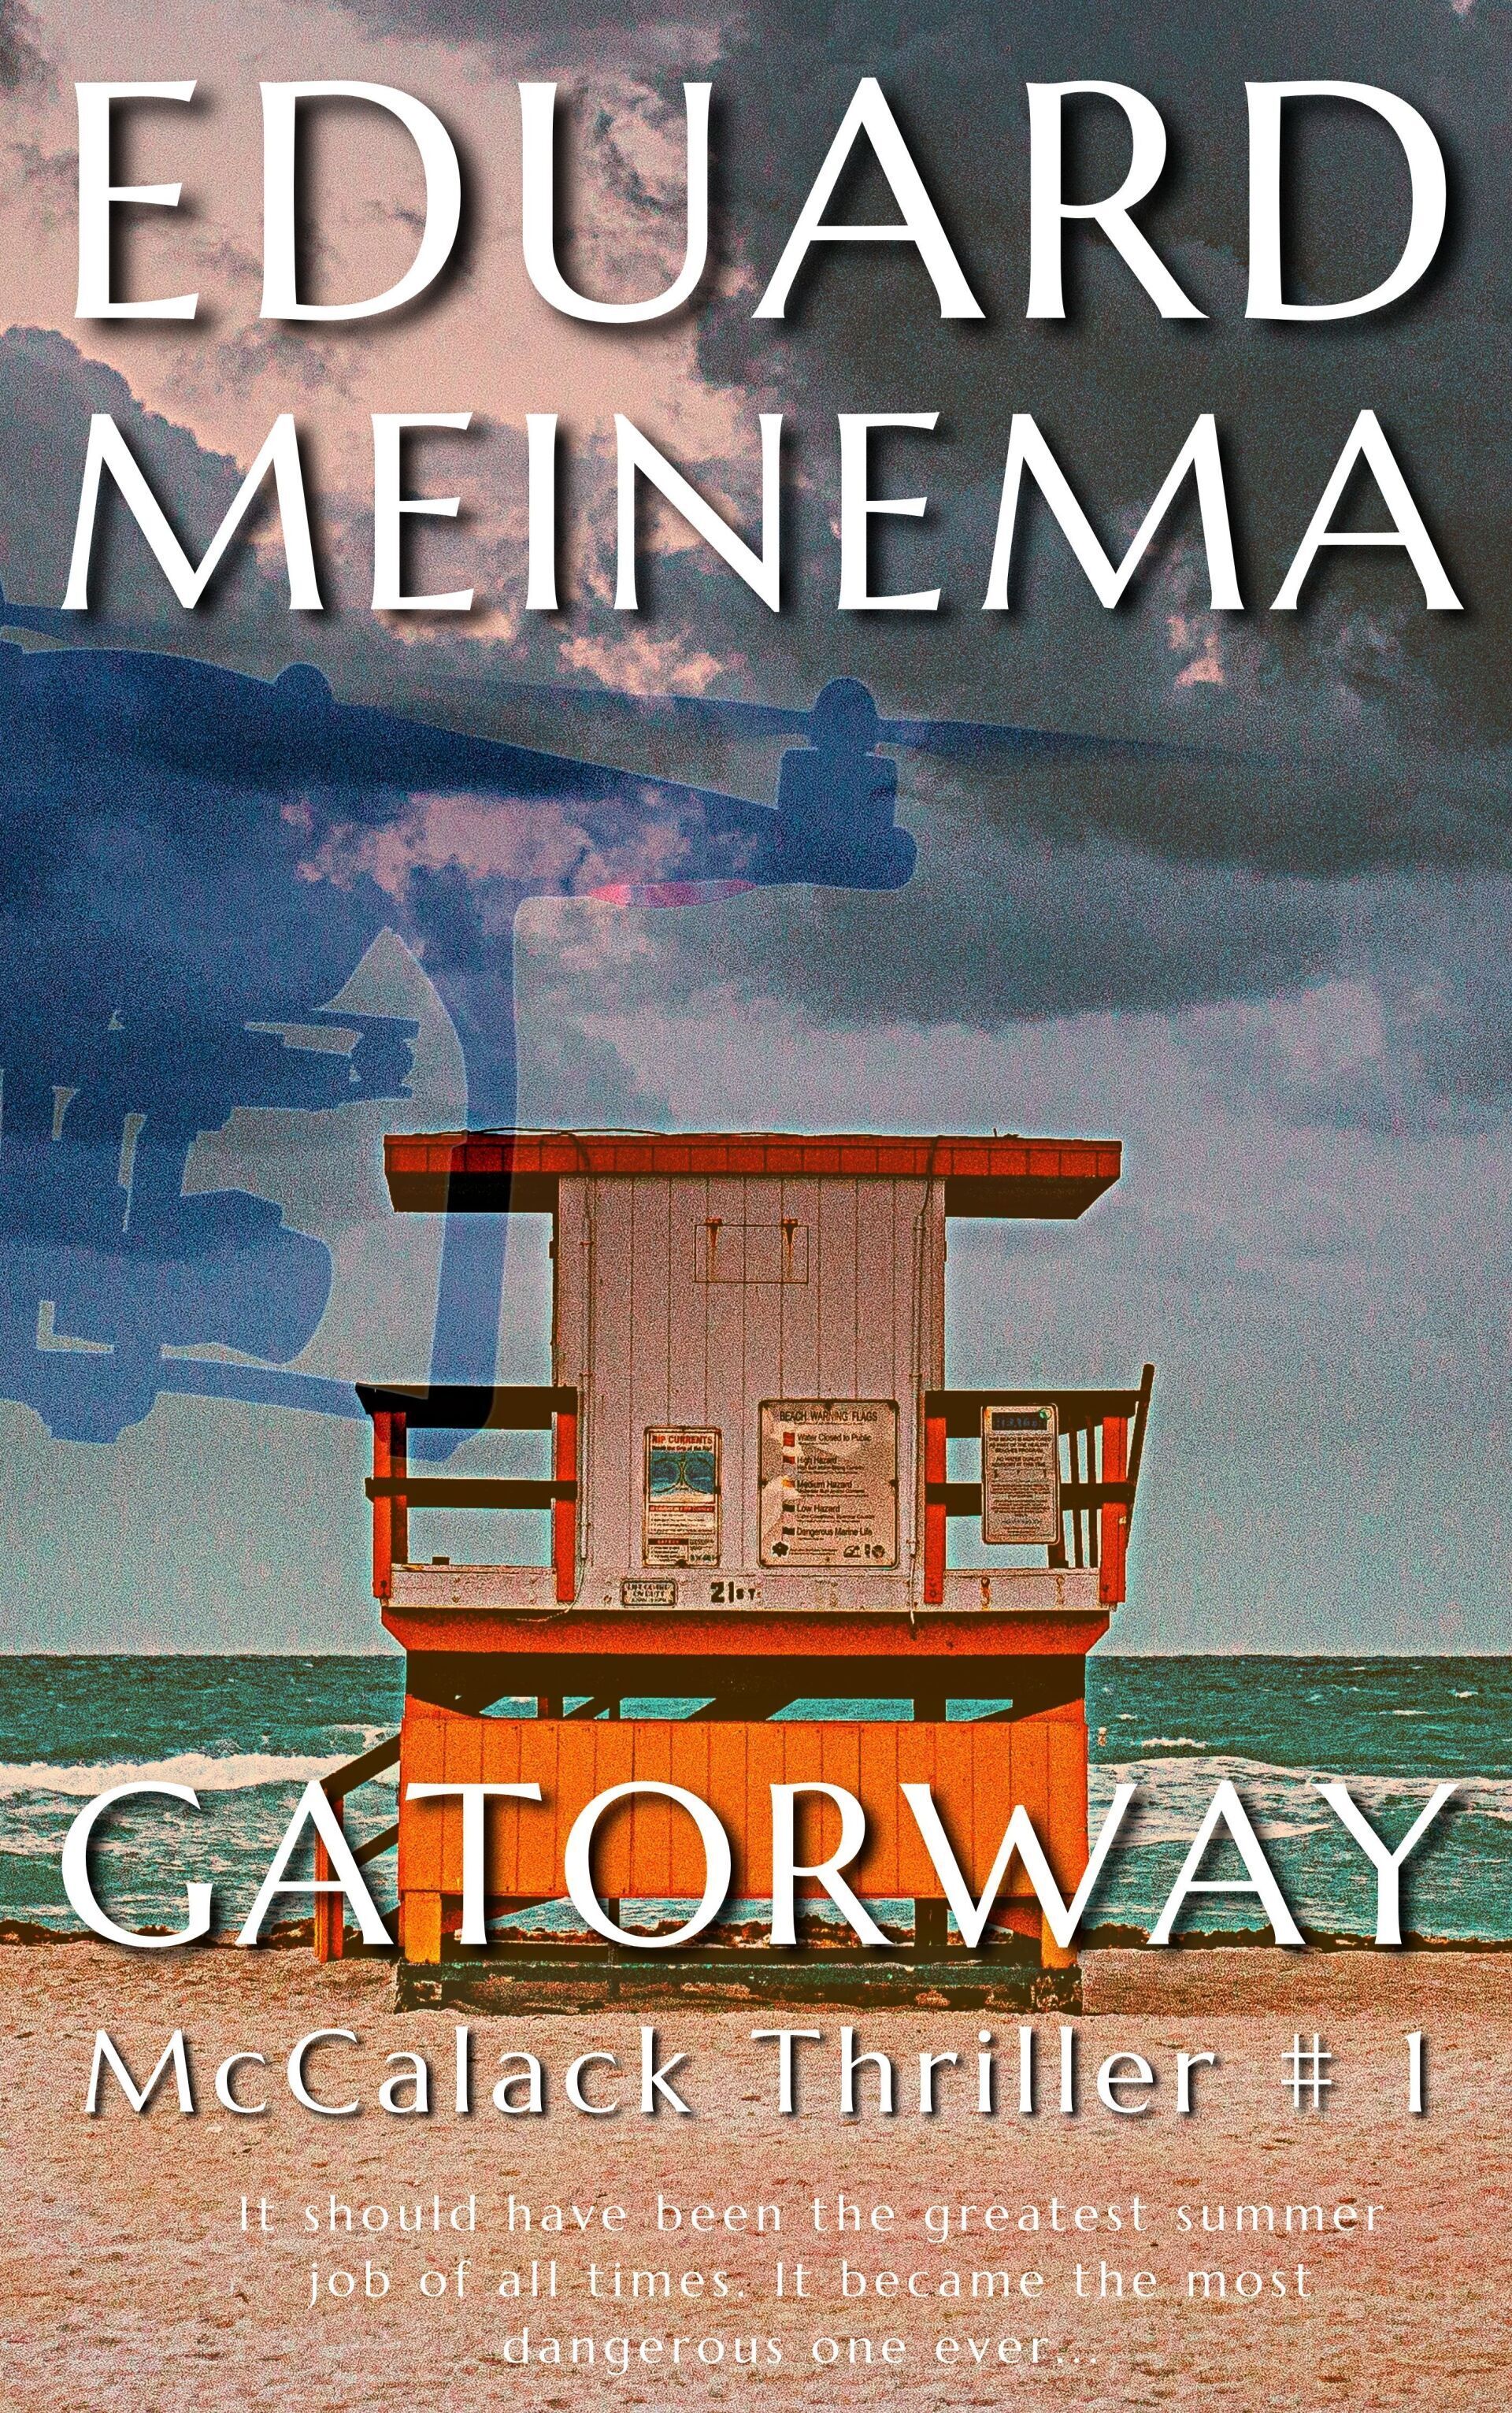 McCalack Thriller #1 Gatorway, by Eduard Meinema